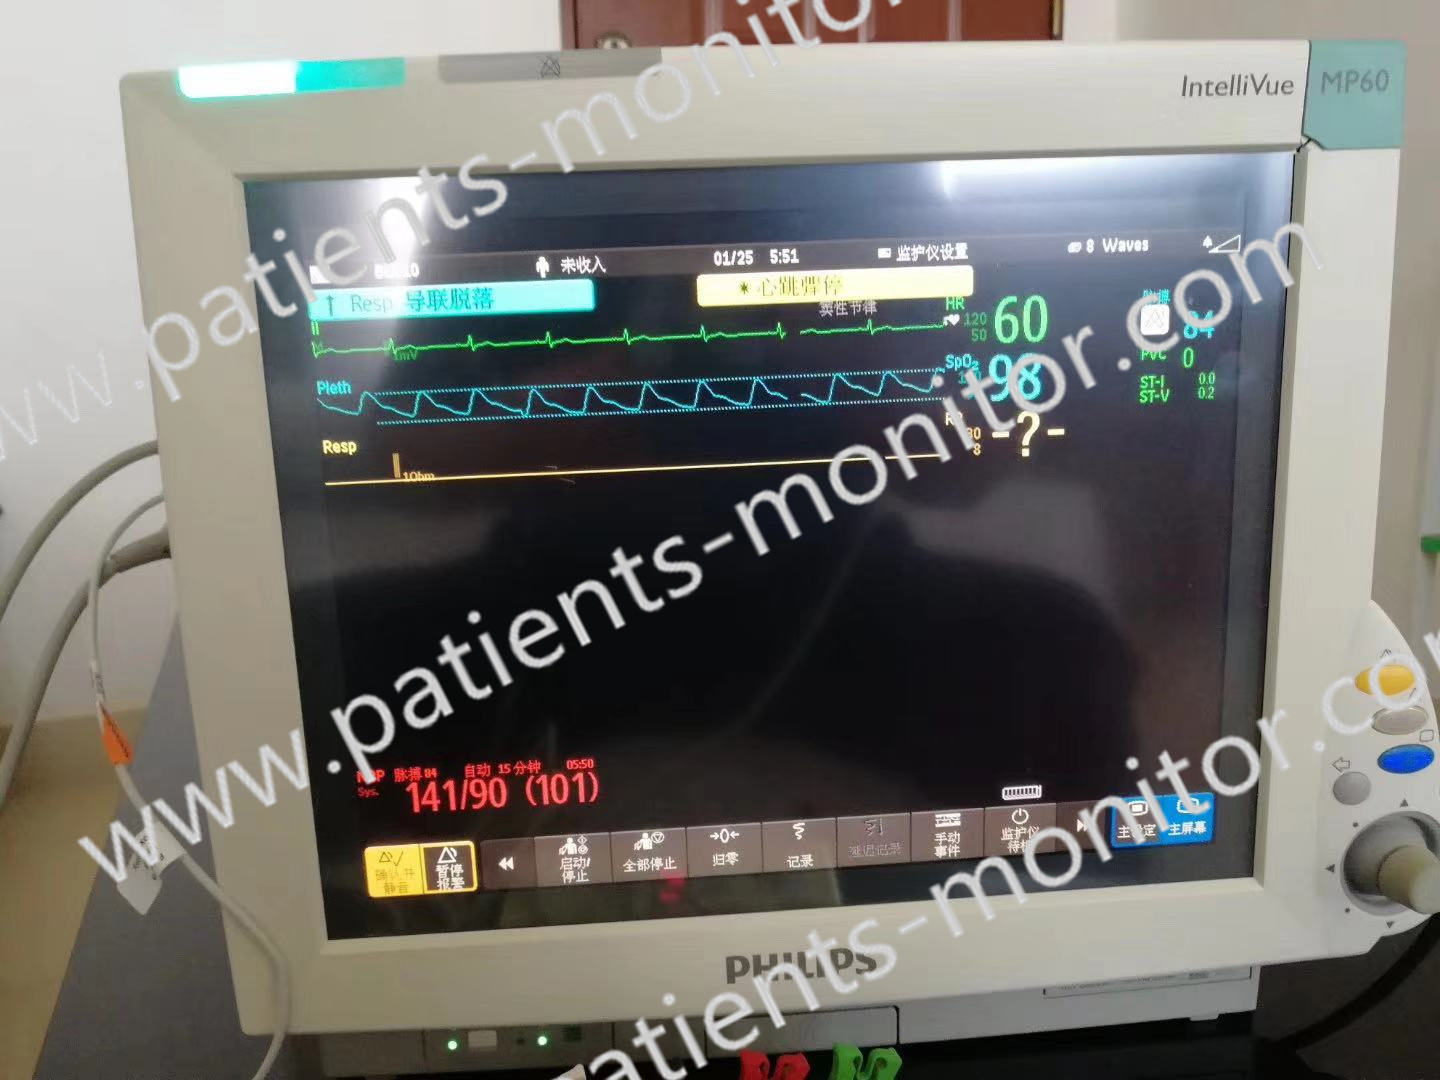 قطعات مانیتور بیمار Philip IntelliVue MP60 M8005A تجهیزات پزشکی برای کلینیک بیمارستان